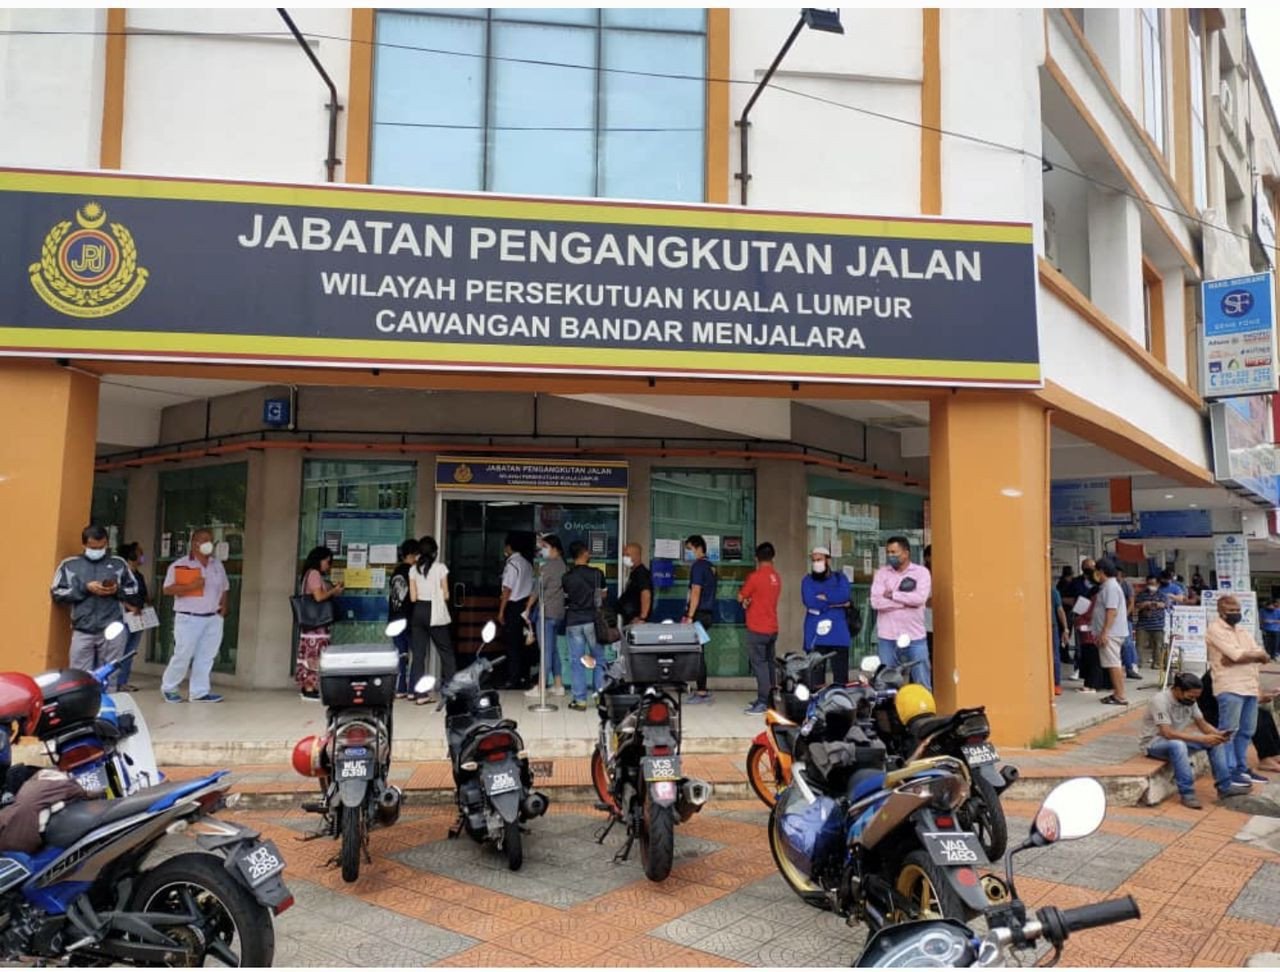 Suasana di pejabat cawangan JPJ di Bandar Menjalara, yang dipenuhi dengan orang ramai yang terpaksa beratur panjang untuk berurusan dengan JPJ.